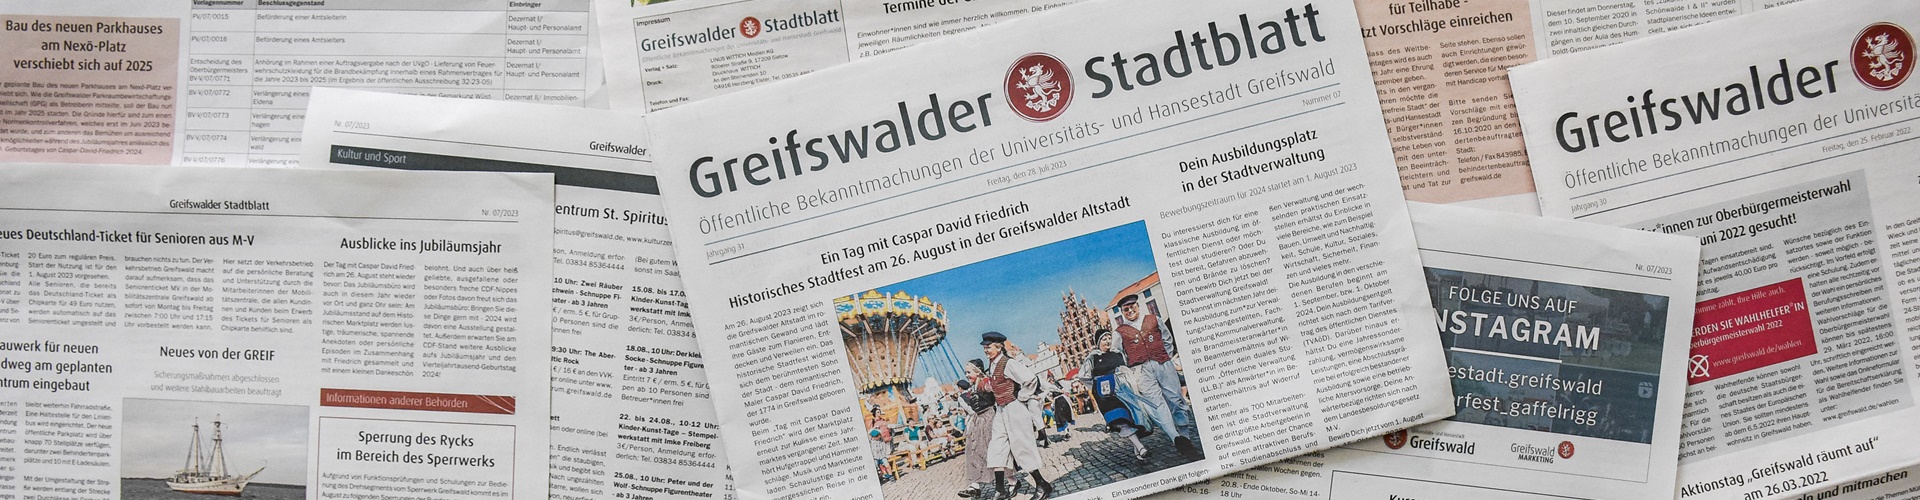 Mehrere gedruckte Zeitungen des Greifswalder Stadtblattes liegen quer übereinander